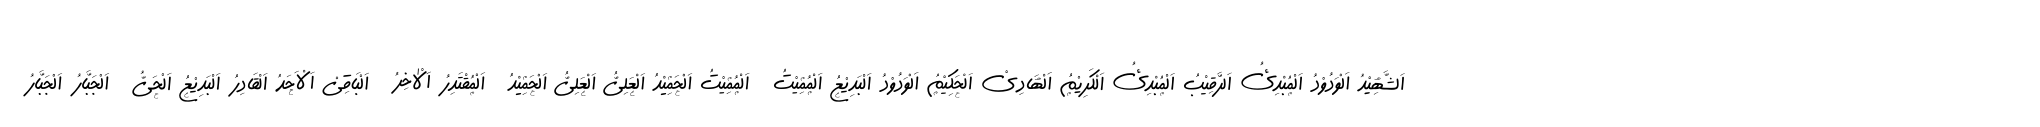 99 Names of ALLAH Handwriting image